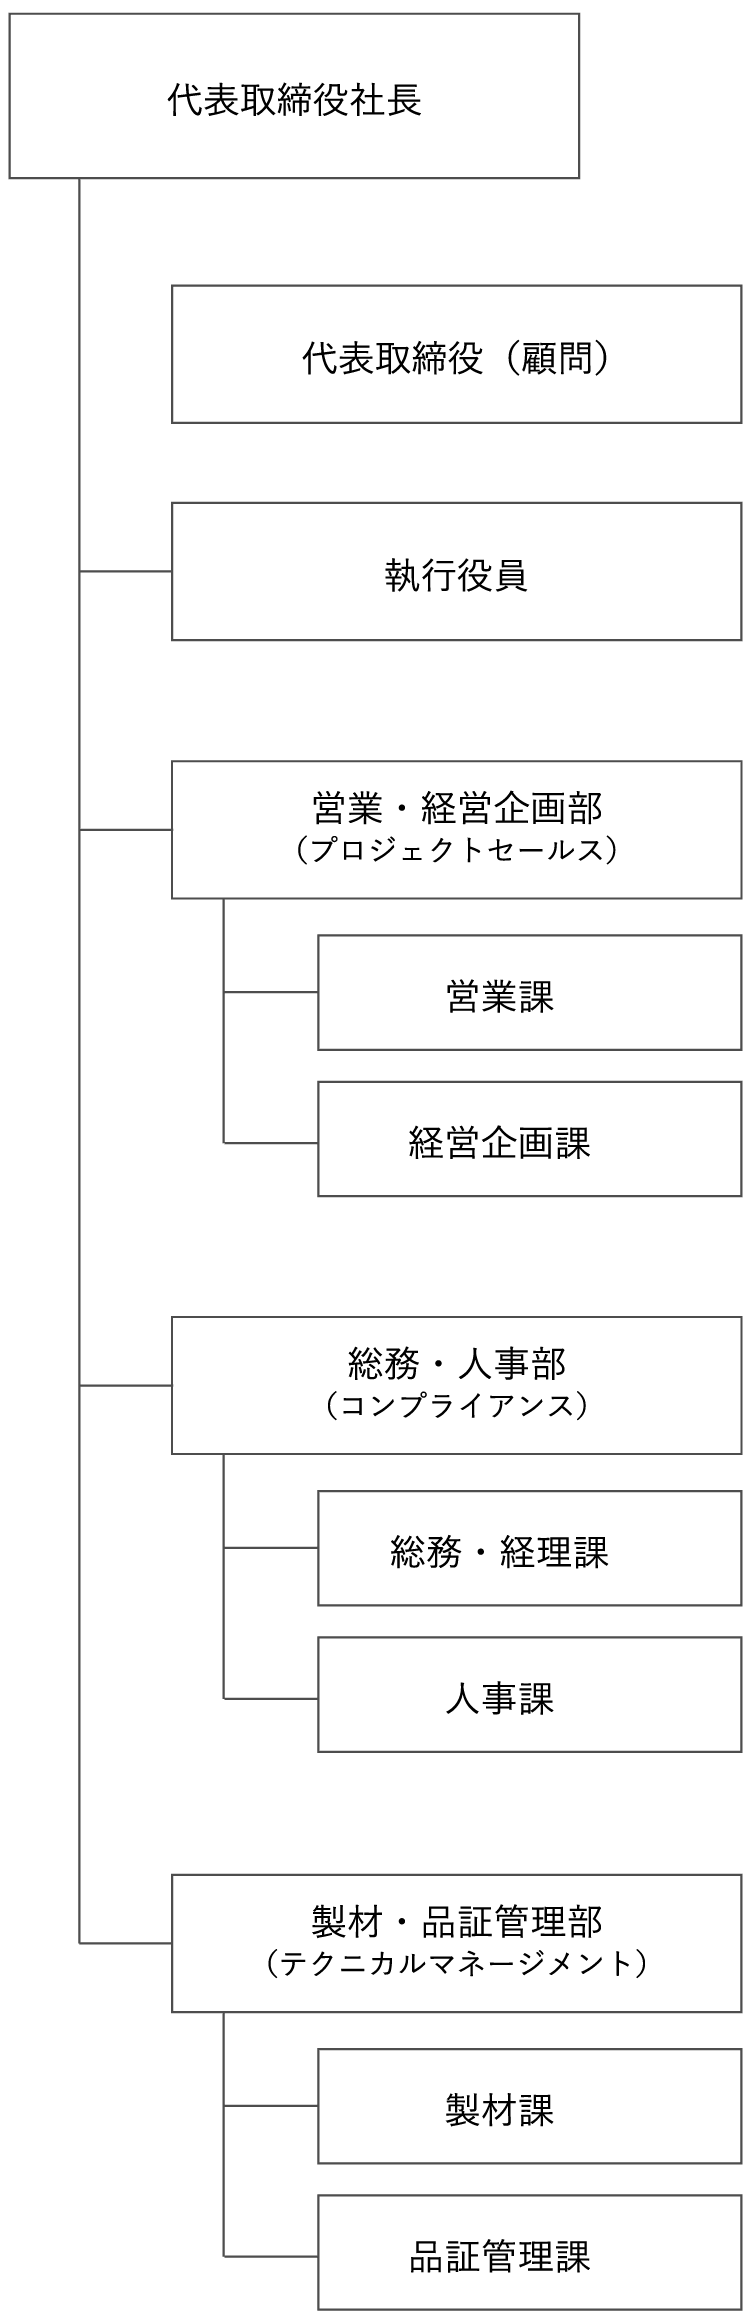 株式会社中村製材所の組織図